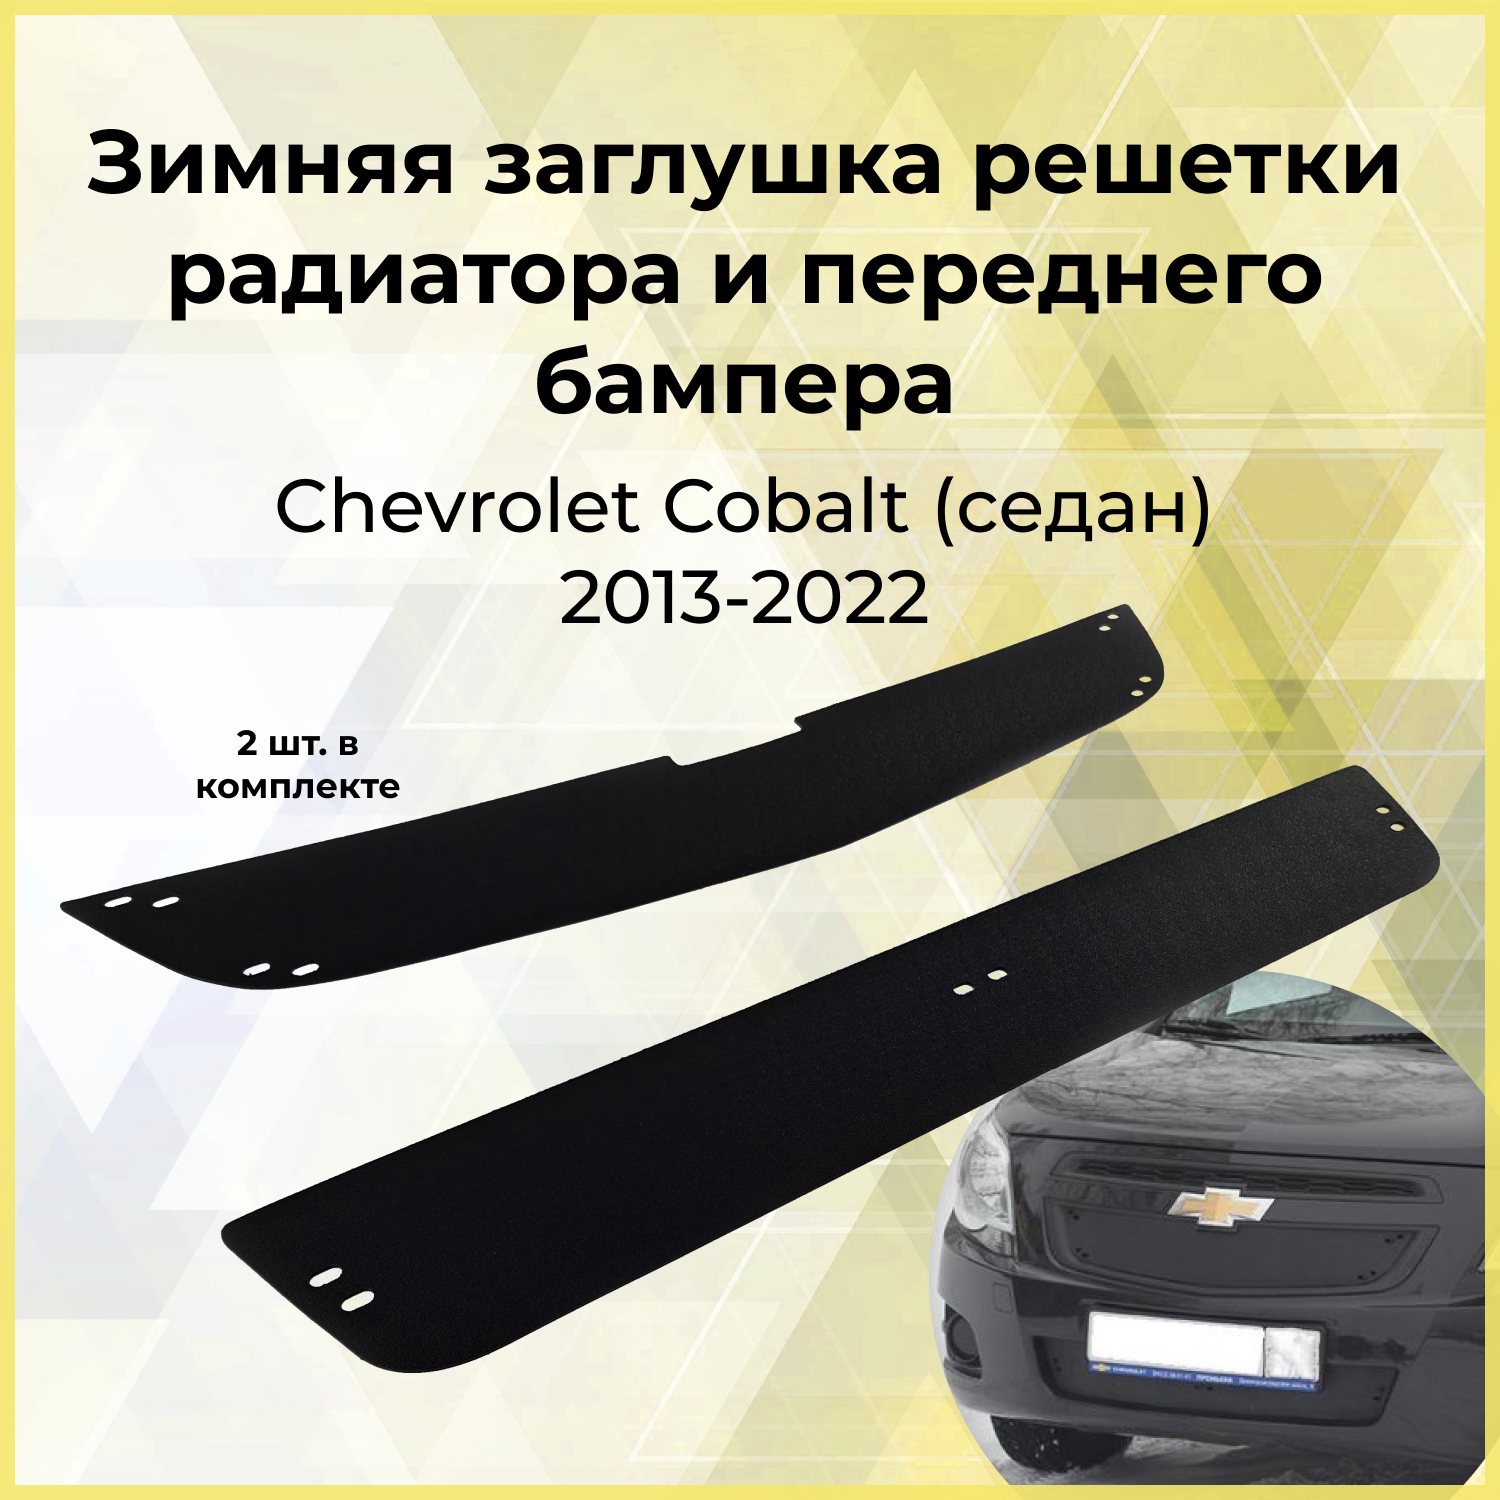 Зимняя заглушка решетки радиатора и переднего бампера Chevrolet Cobalt (седан) 2013-2015